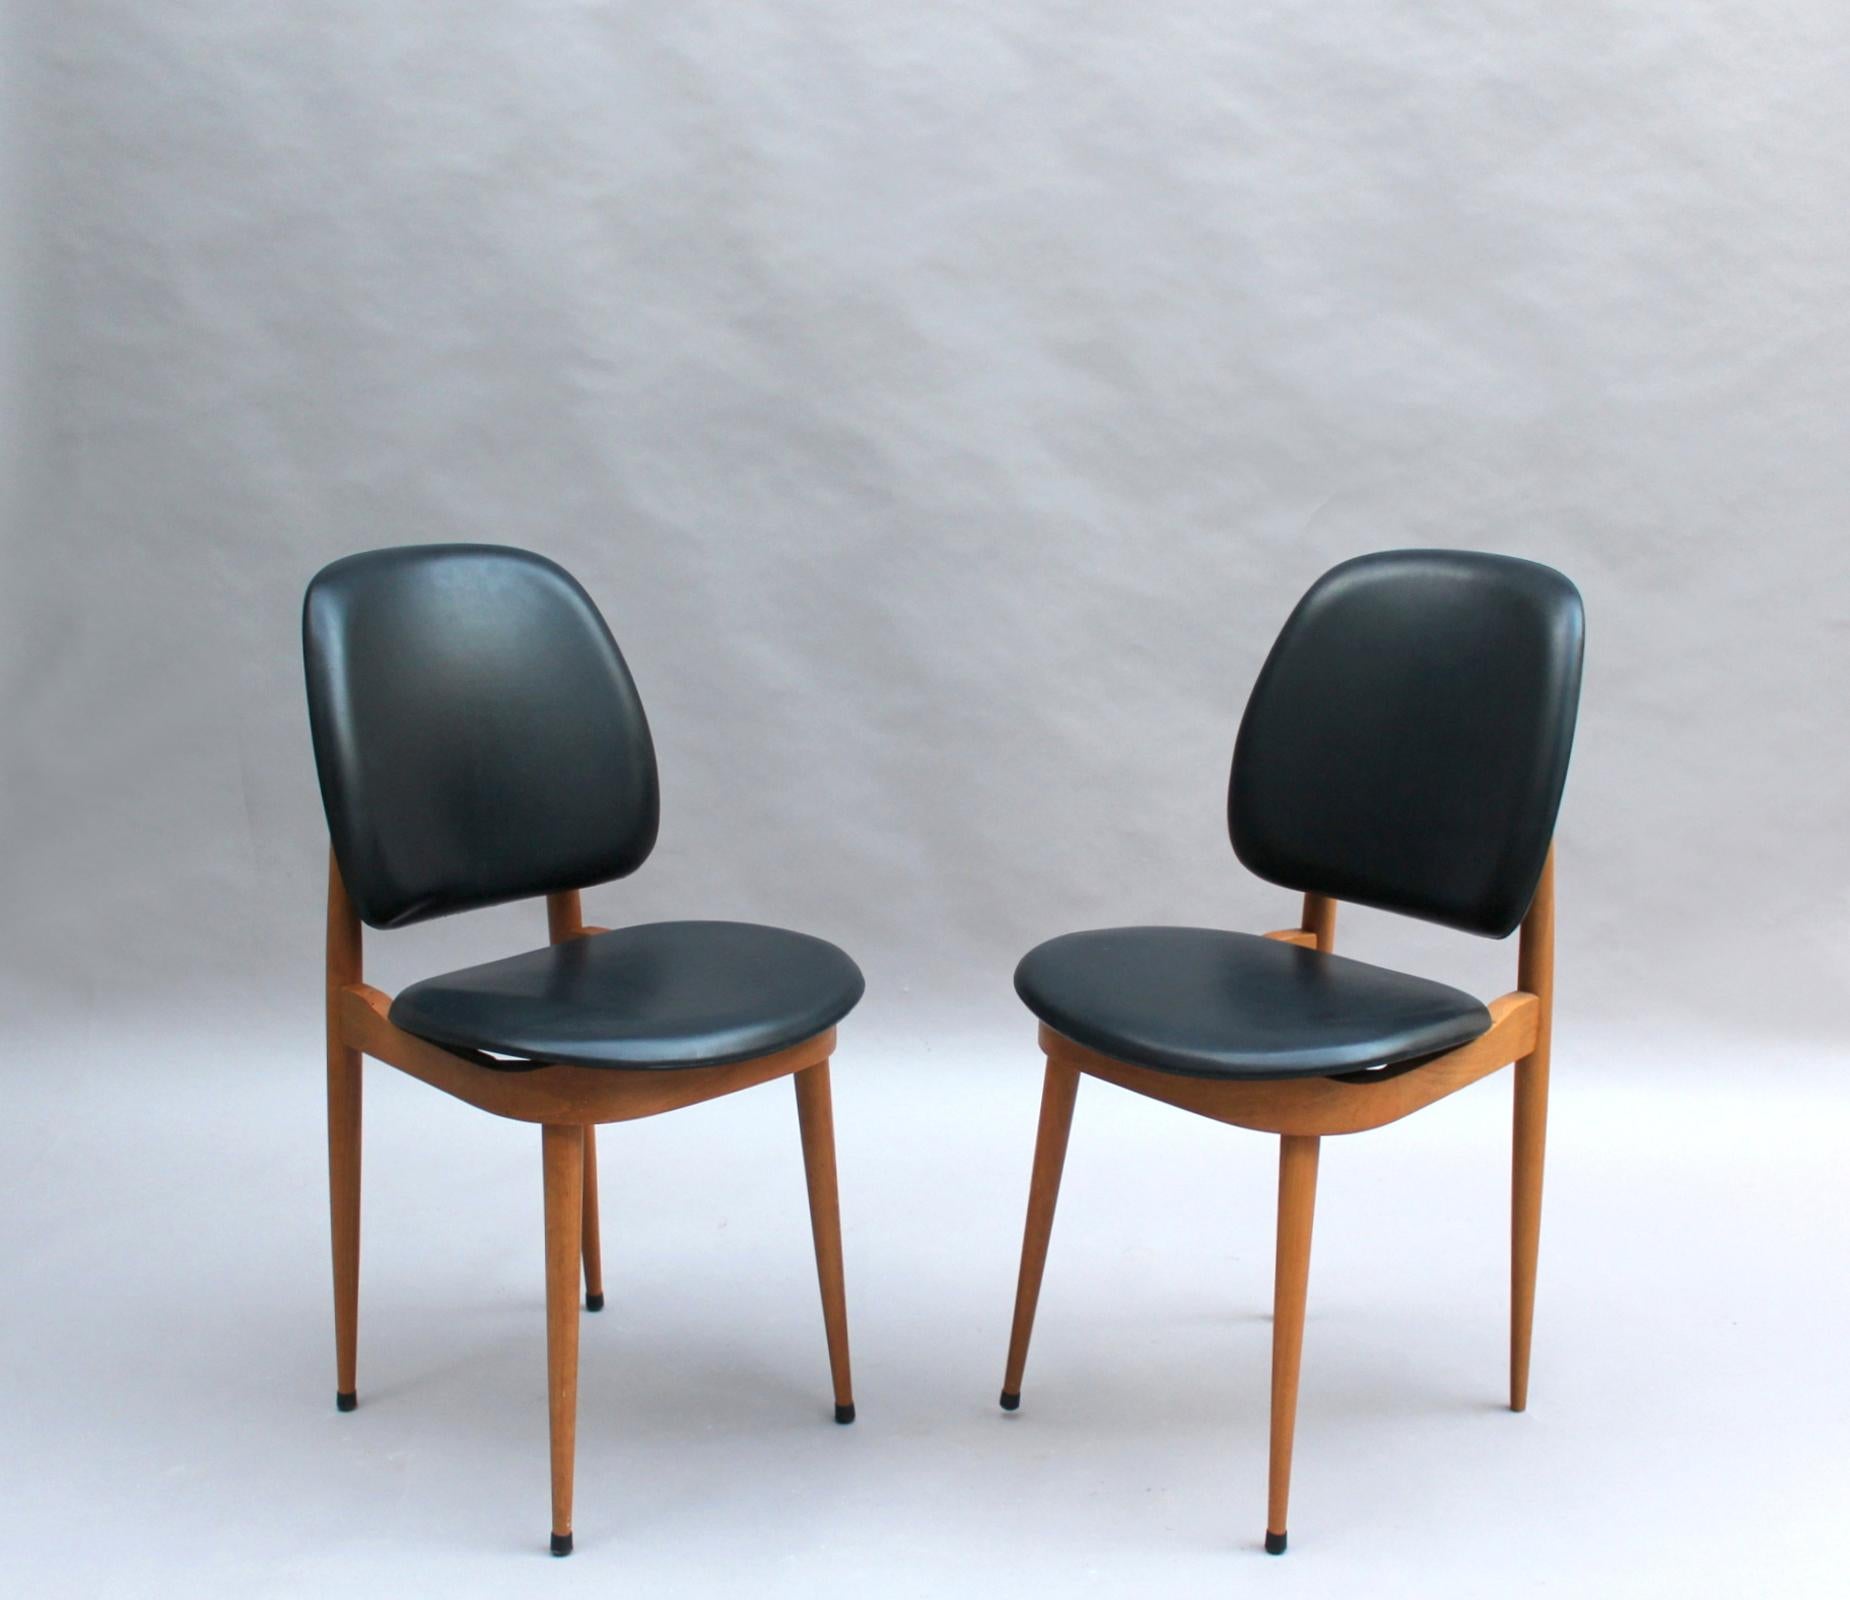 12 chaises de salle à manger françaises du milieu du siècle en hêtre et naugahyde attribuées à Pierre Guariche, modèle Pégase, édité par Baumann.

Le prix est par chaise.